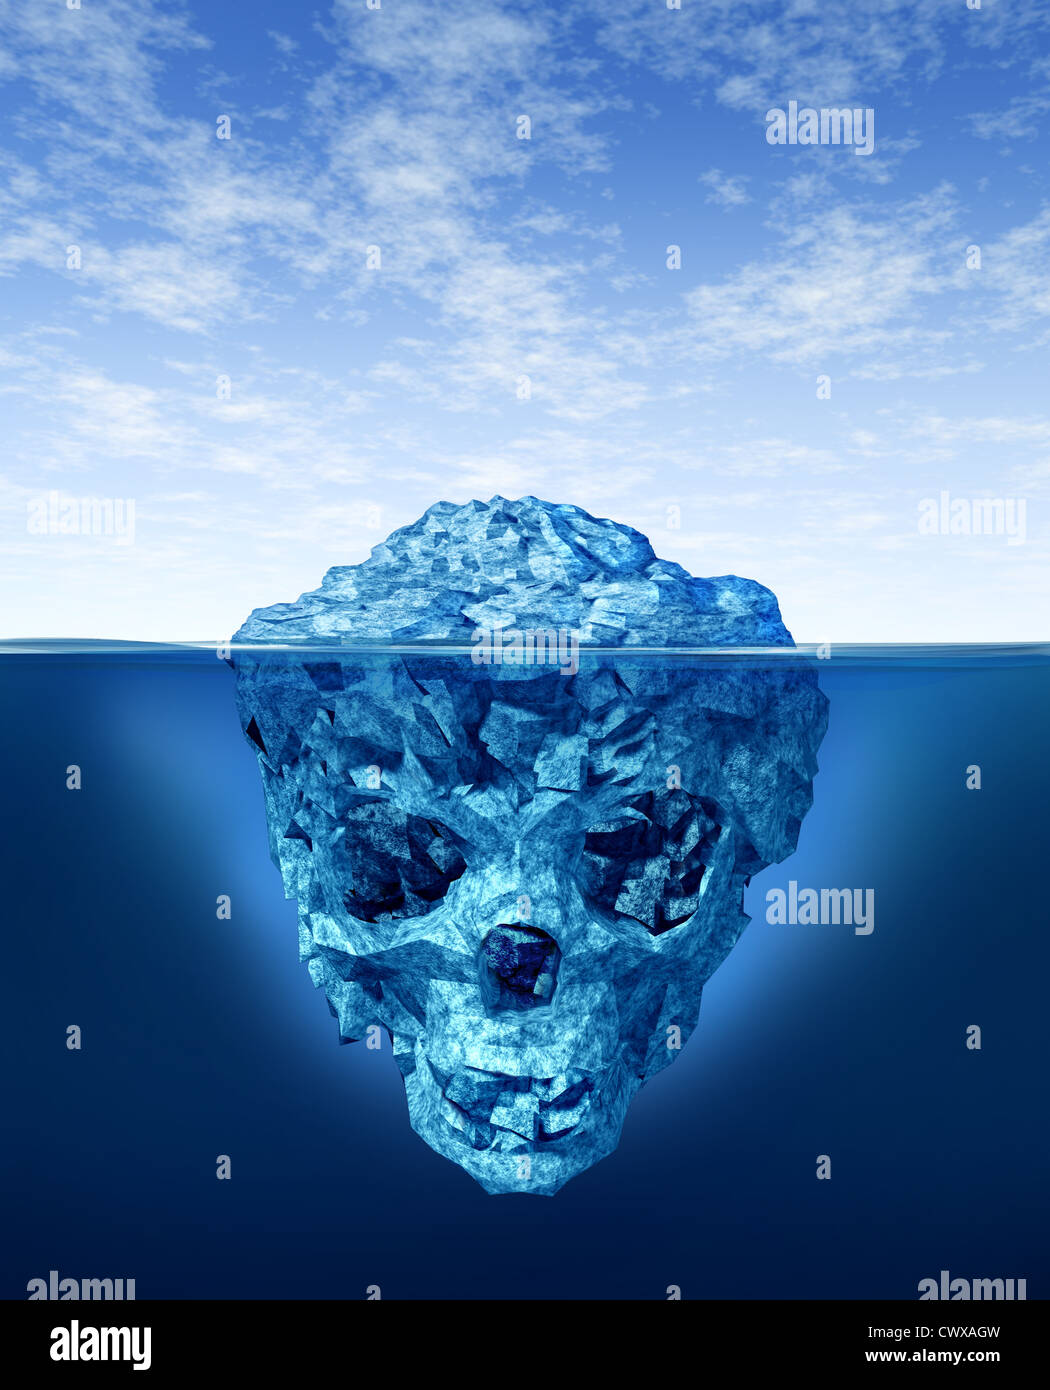 Pericoli nascosti con un pericoloso ingannevoli iceberg galleggianti in freddo Oceano artico acqua con una piccola parte del ghiaccio congelato montagna sopra il mare e il nascosto parte inferiore a forma di morte teschio umano scheletro. Foto Stock